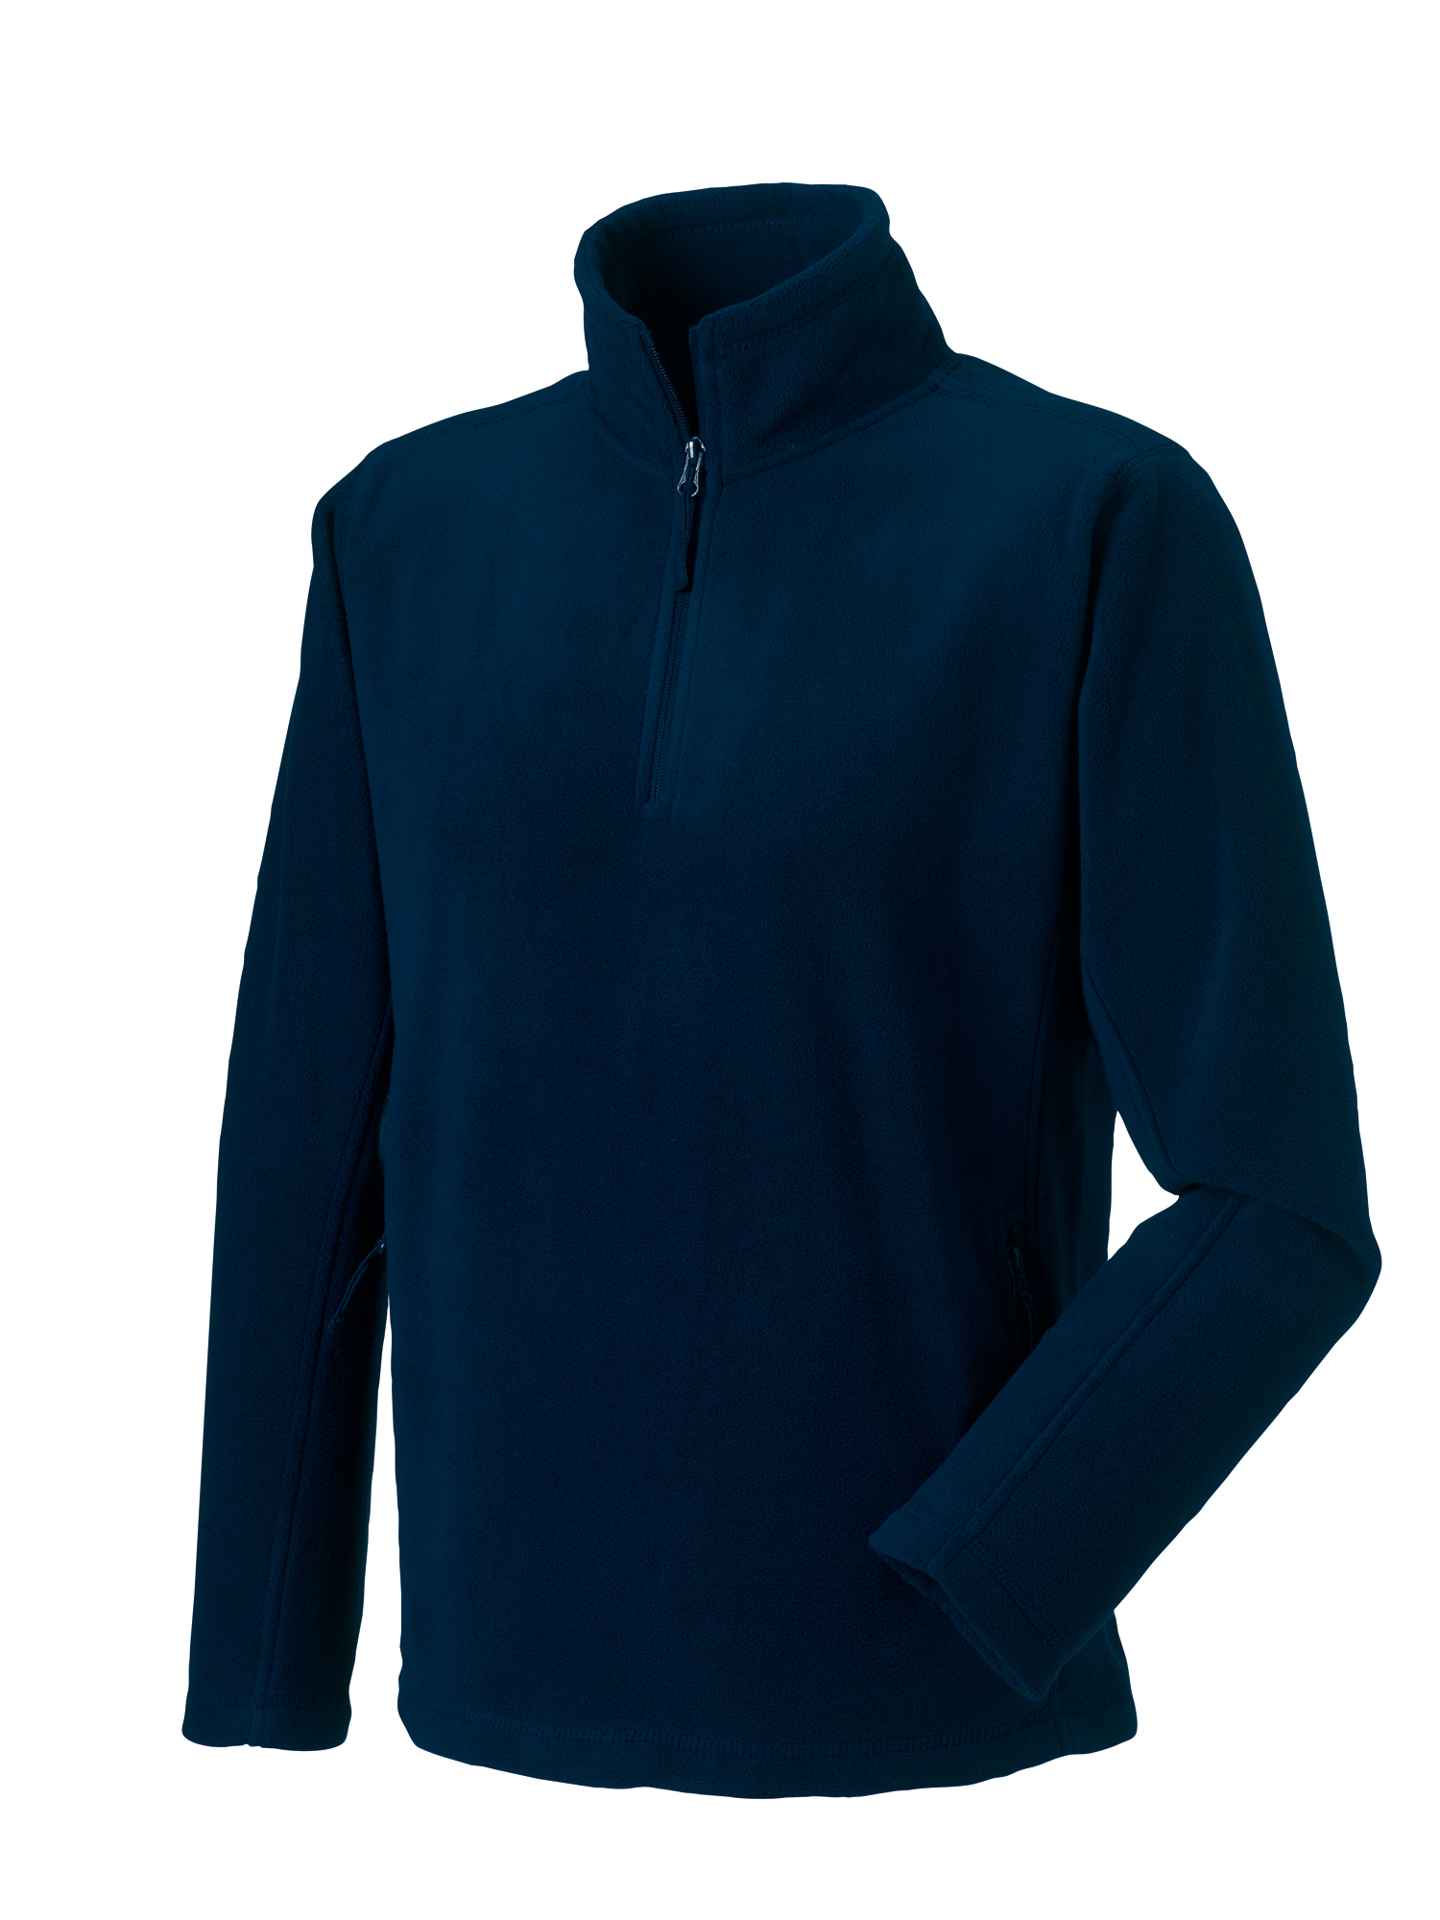 1/4 zip outdoor fleece in navy with cadet collar and pockets